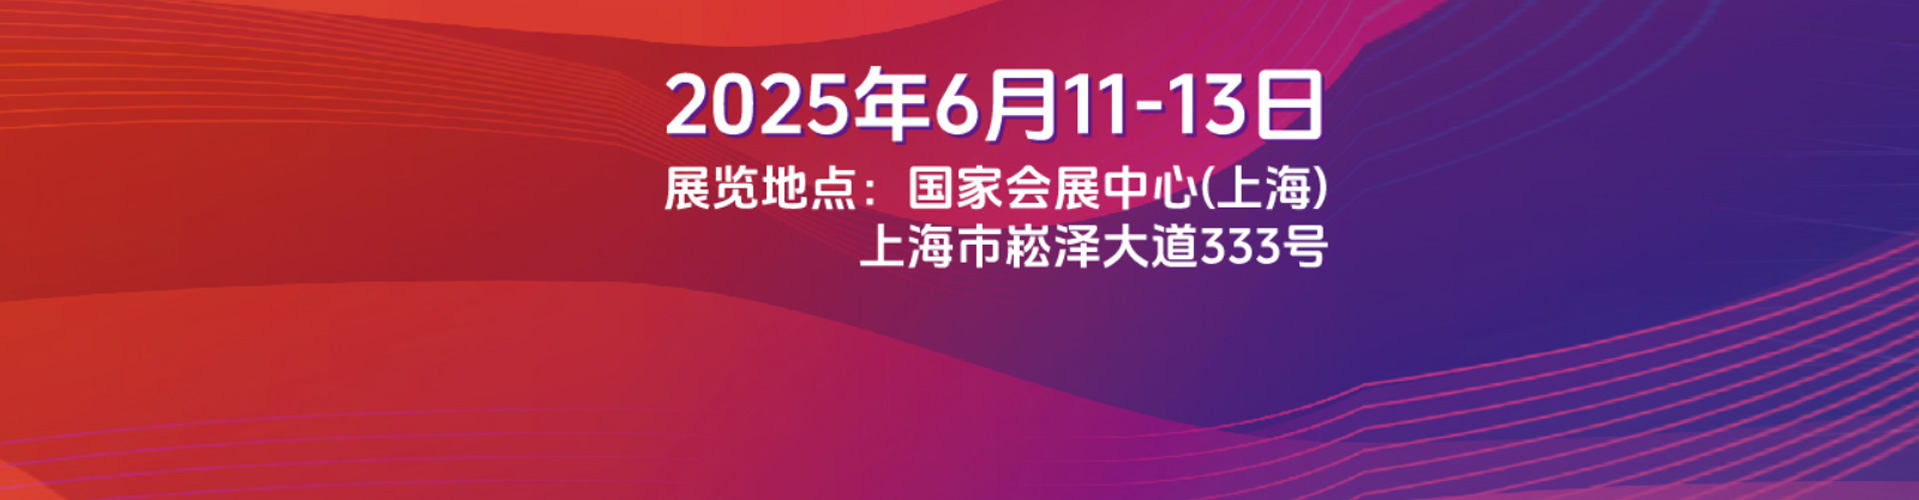 SNEC*十四届2020国际太阳能光伏与智慧能源上海展览会暨论坛储能及氢能燃料电池展览会暨论坛